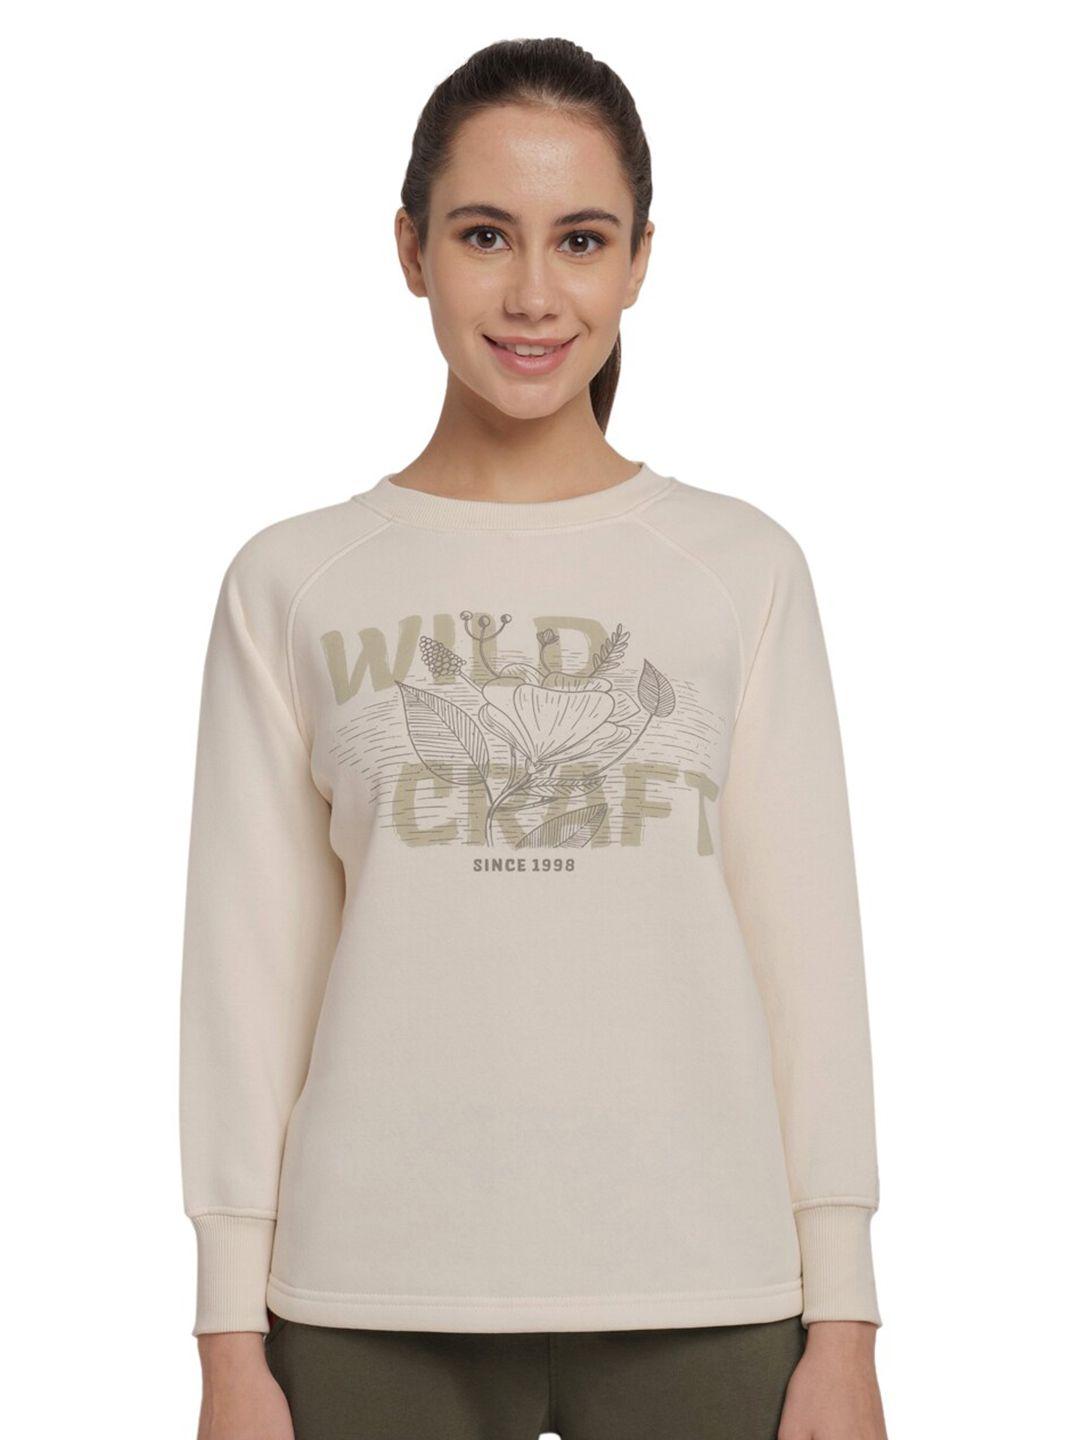 wildcraft women off white printed cotton sweatshirt